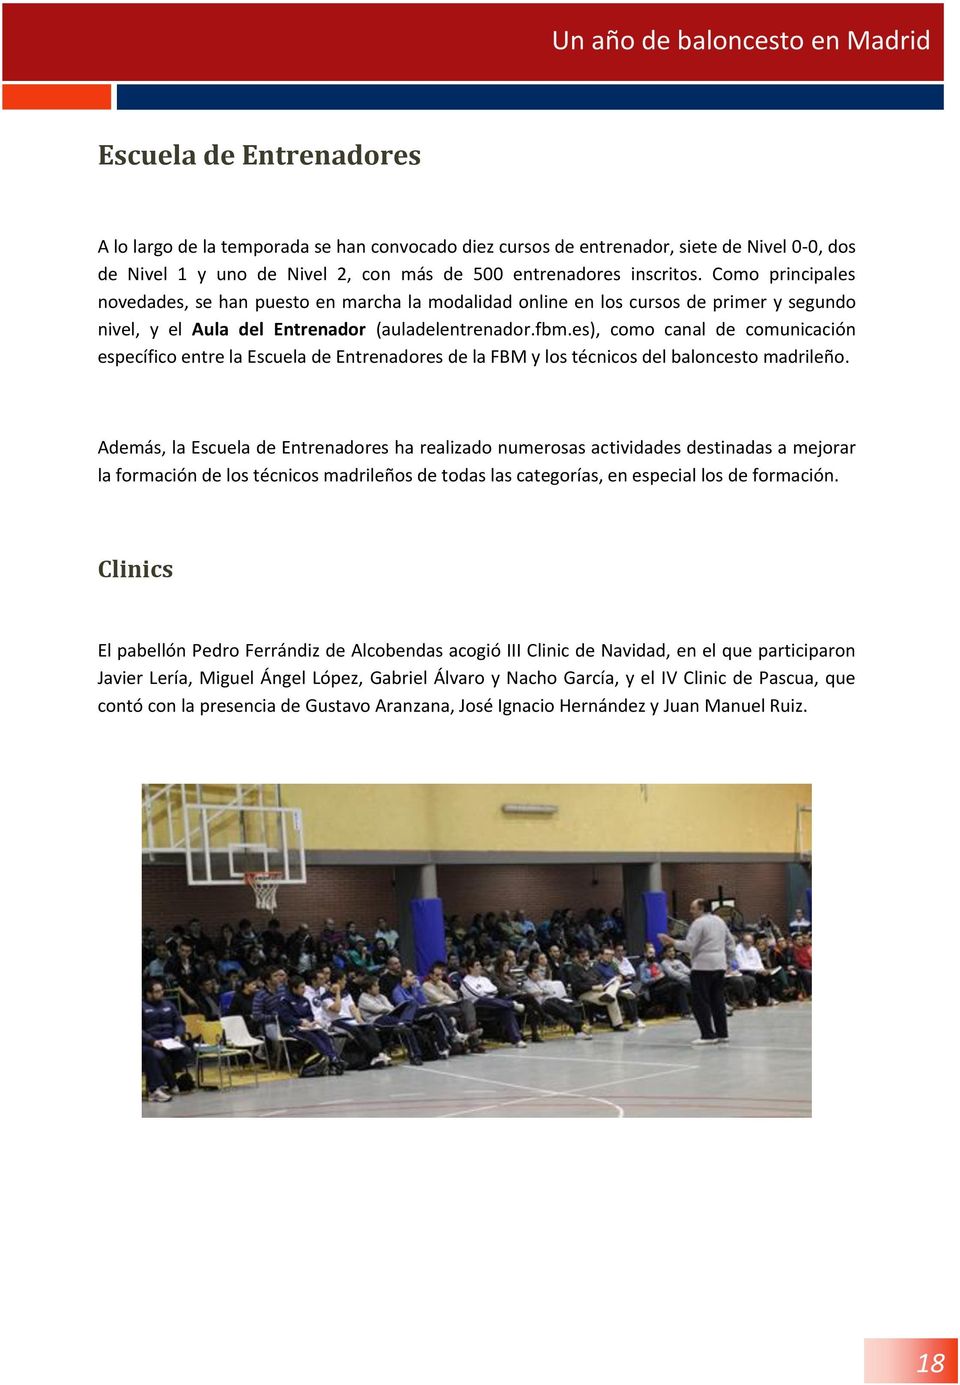 es), como canal de comunicación específico entre la Escuela de Entrenadores de la FBM y los técnicos del baloncesto madrileño.